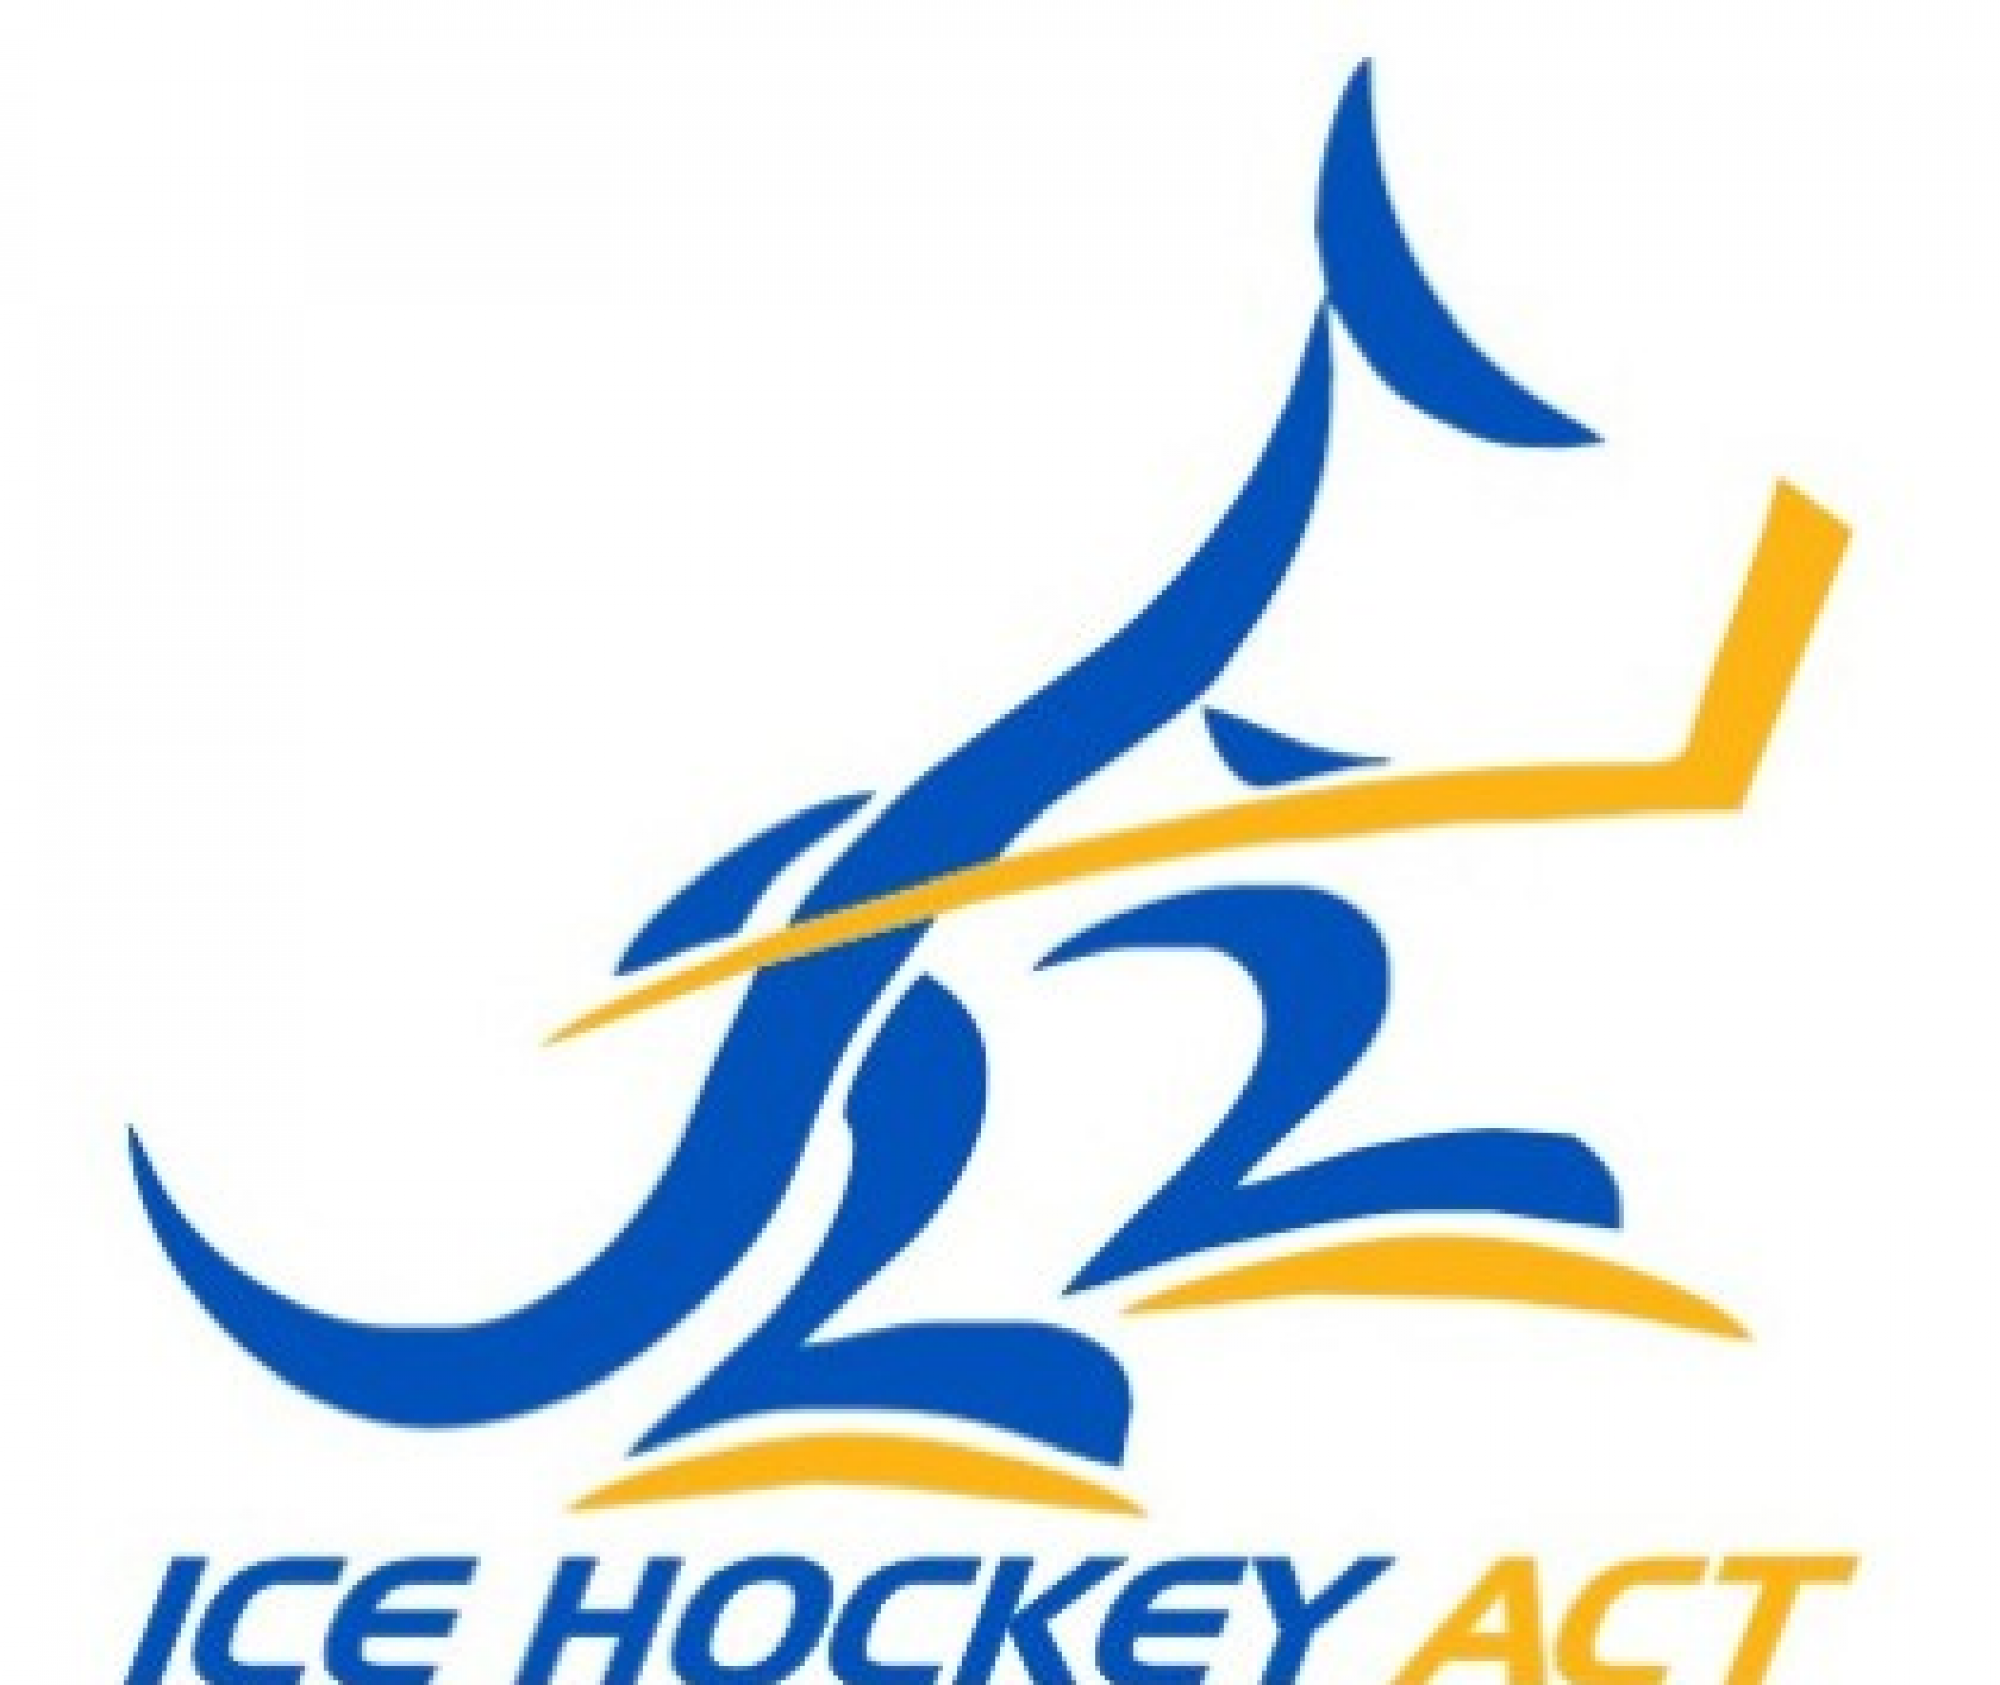 Ice Hockey ACT